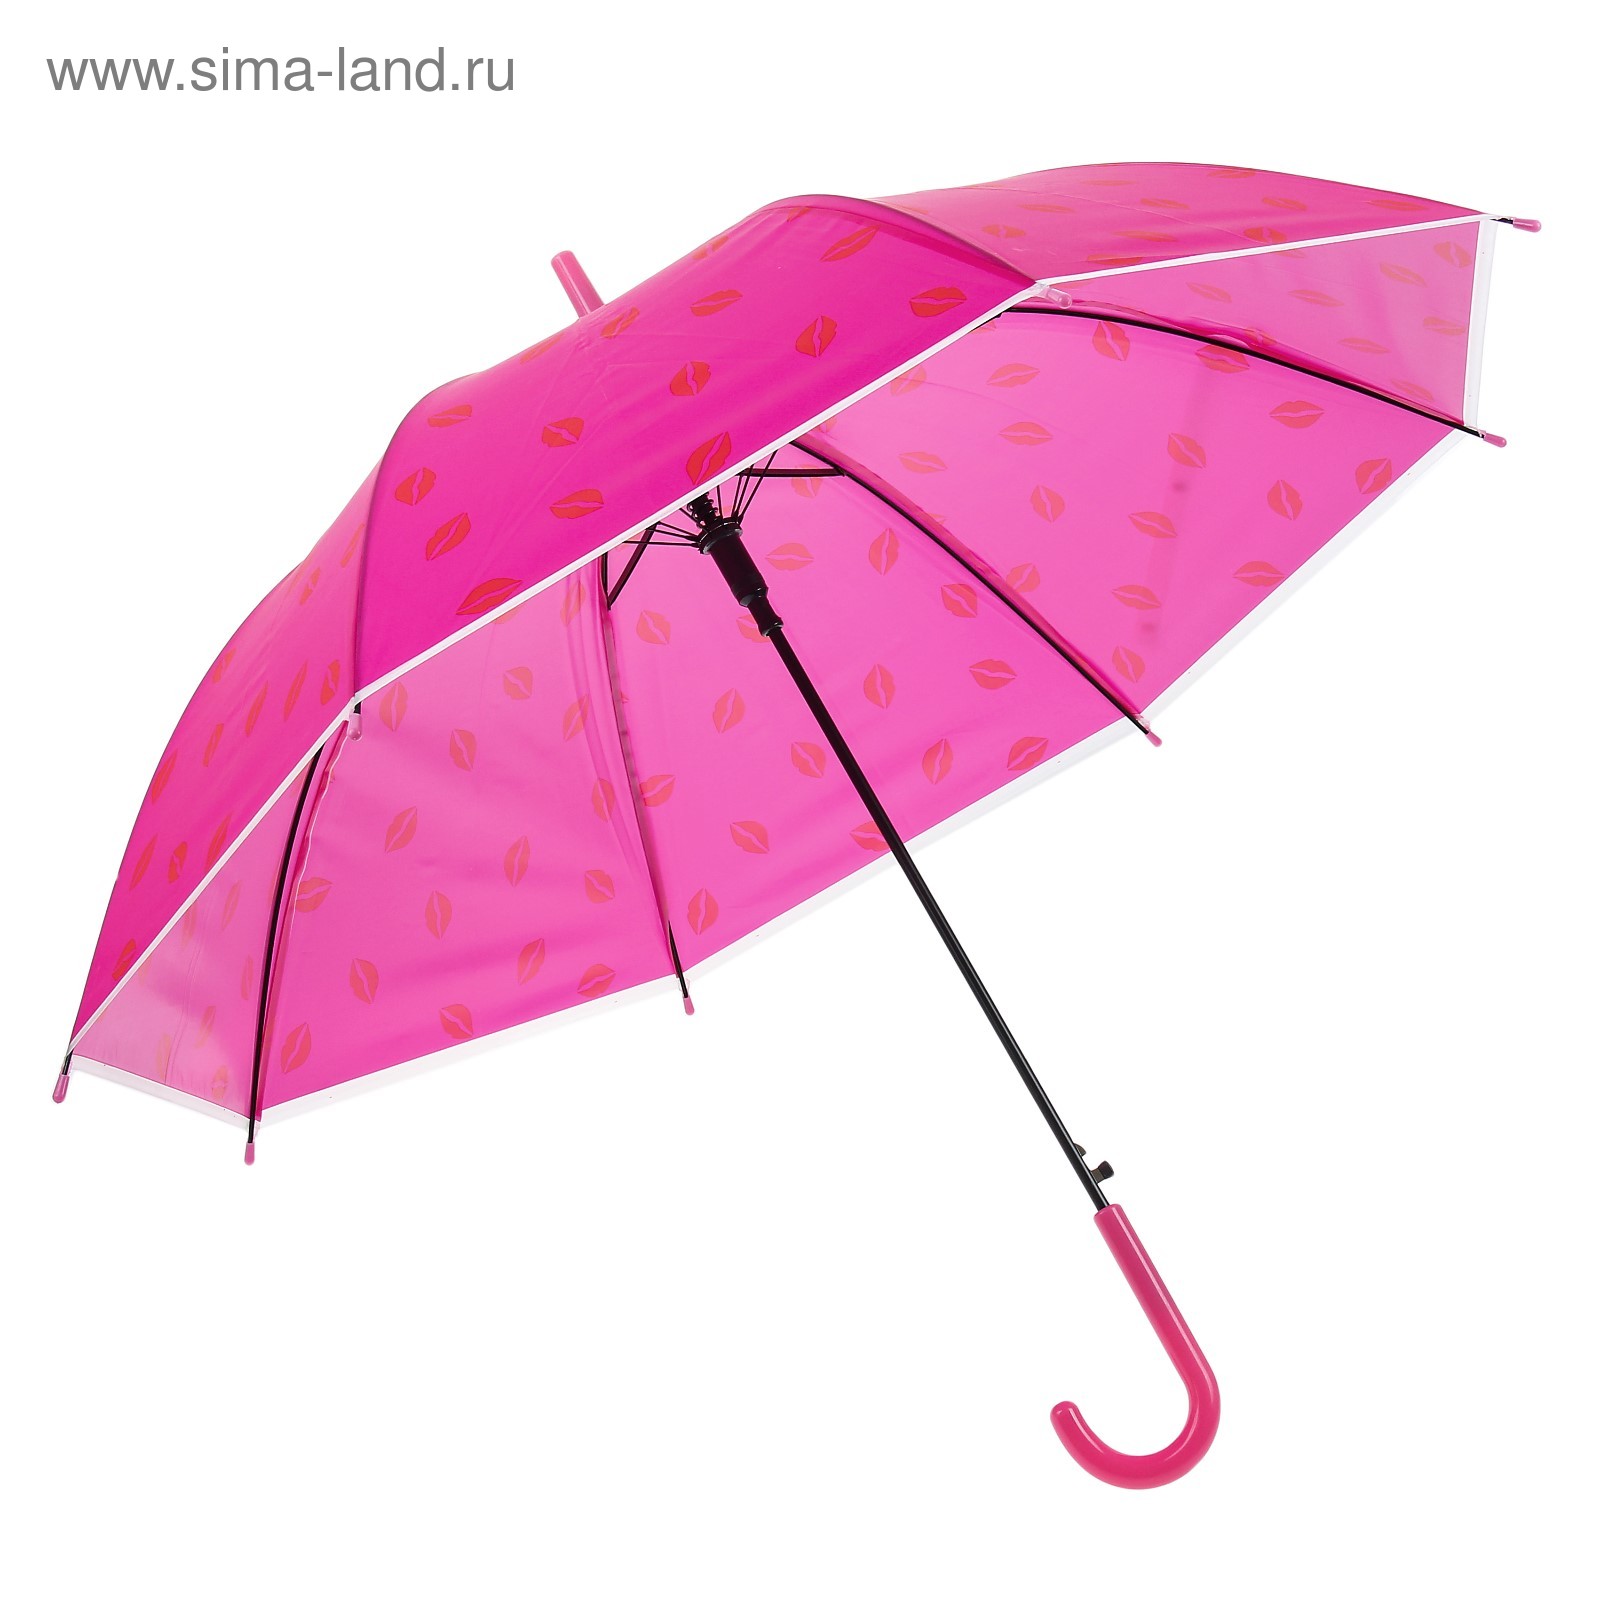 Зонтик 45 см 5 цветов 18033